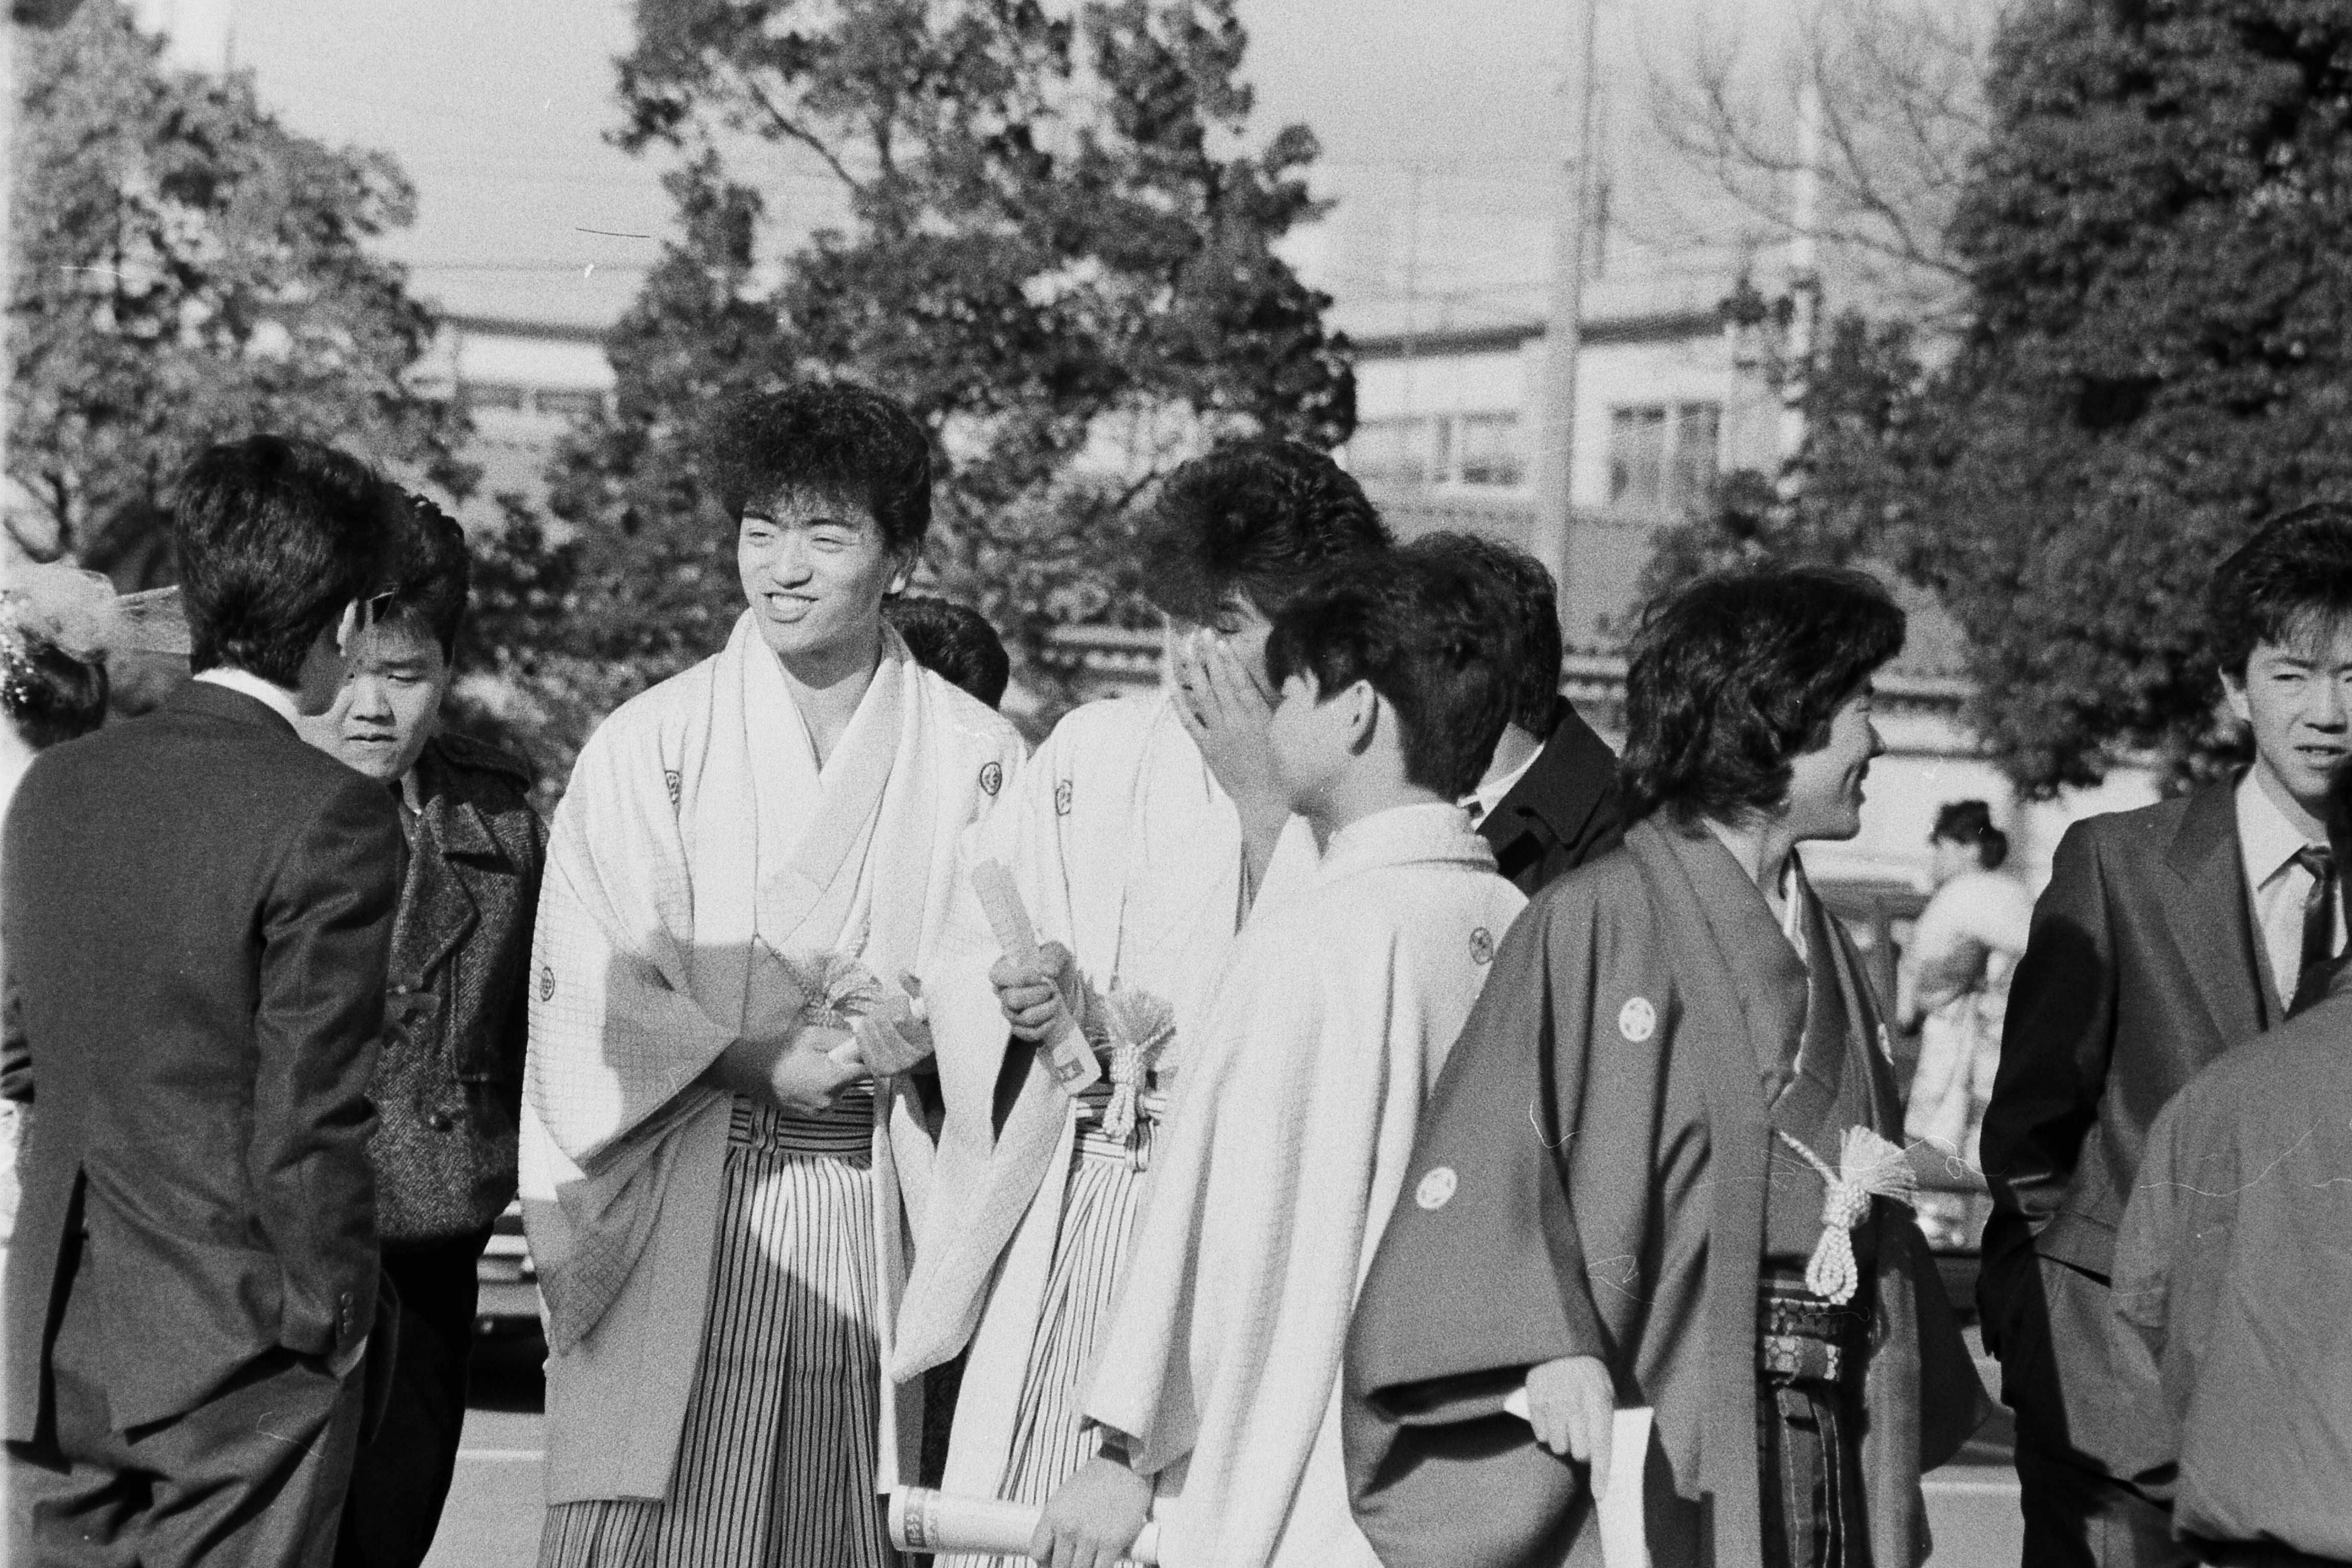 昭和61年の成人式 羽織袴姿の男性がみられるように(昭和61年1月 いわき市撮影)